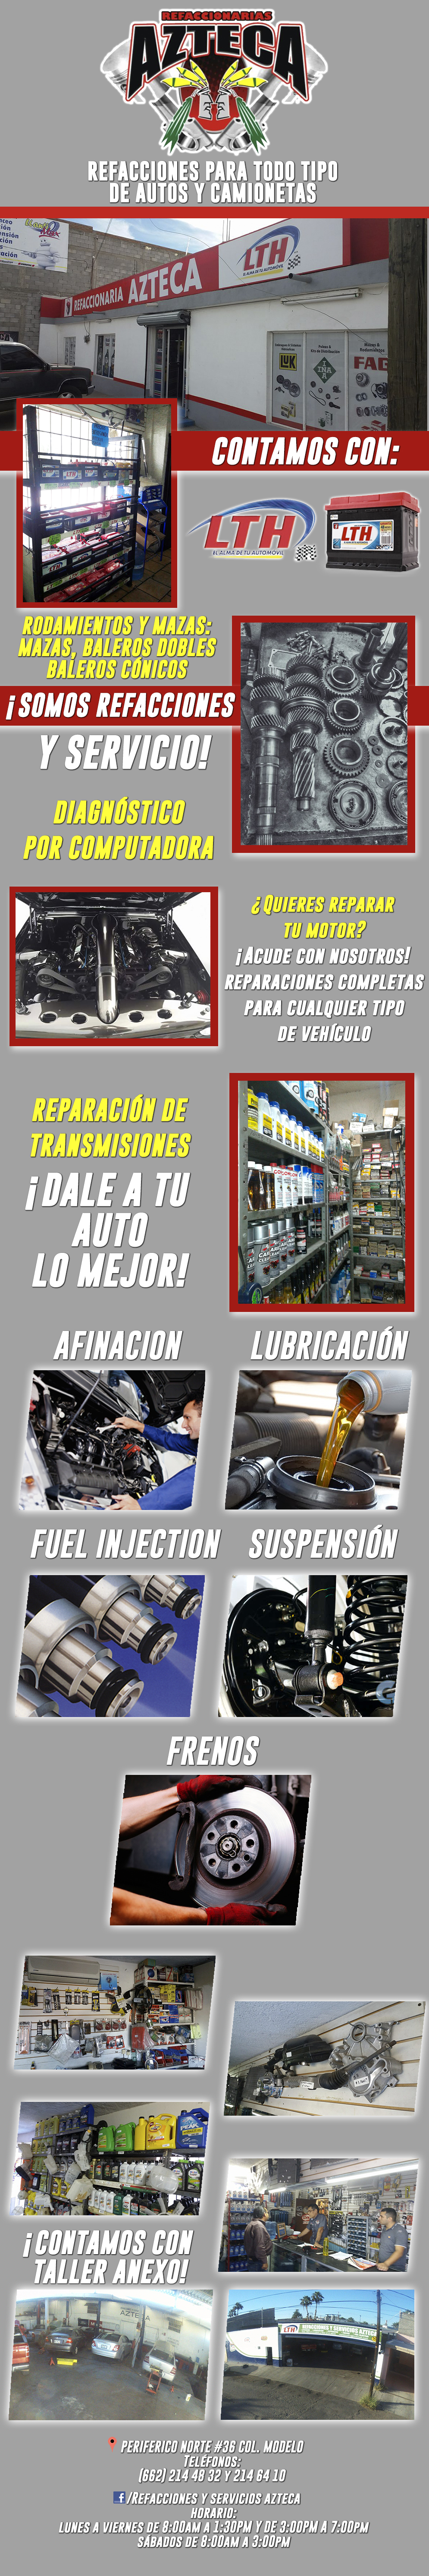 Refaccionaria AZTECA Perinorte -Refacciones para todo tipo de AutomÃ³viles y Camiones. Contamos con una gran variedad de Refacciones. CONTAMOS CON TALLER ANEXO.     